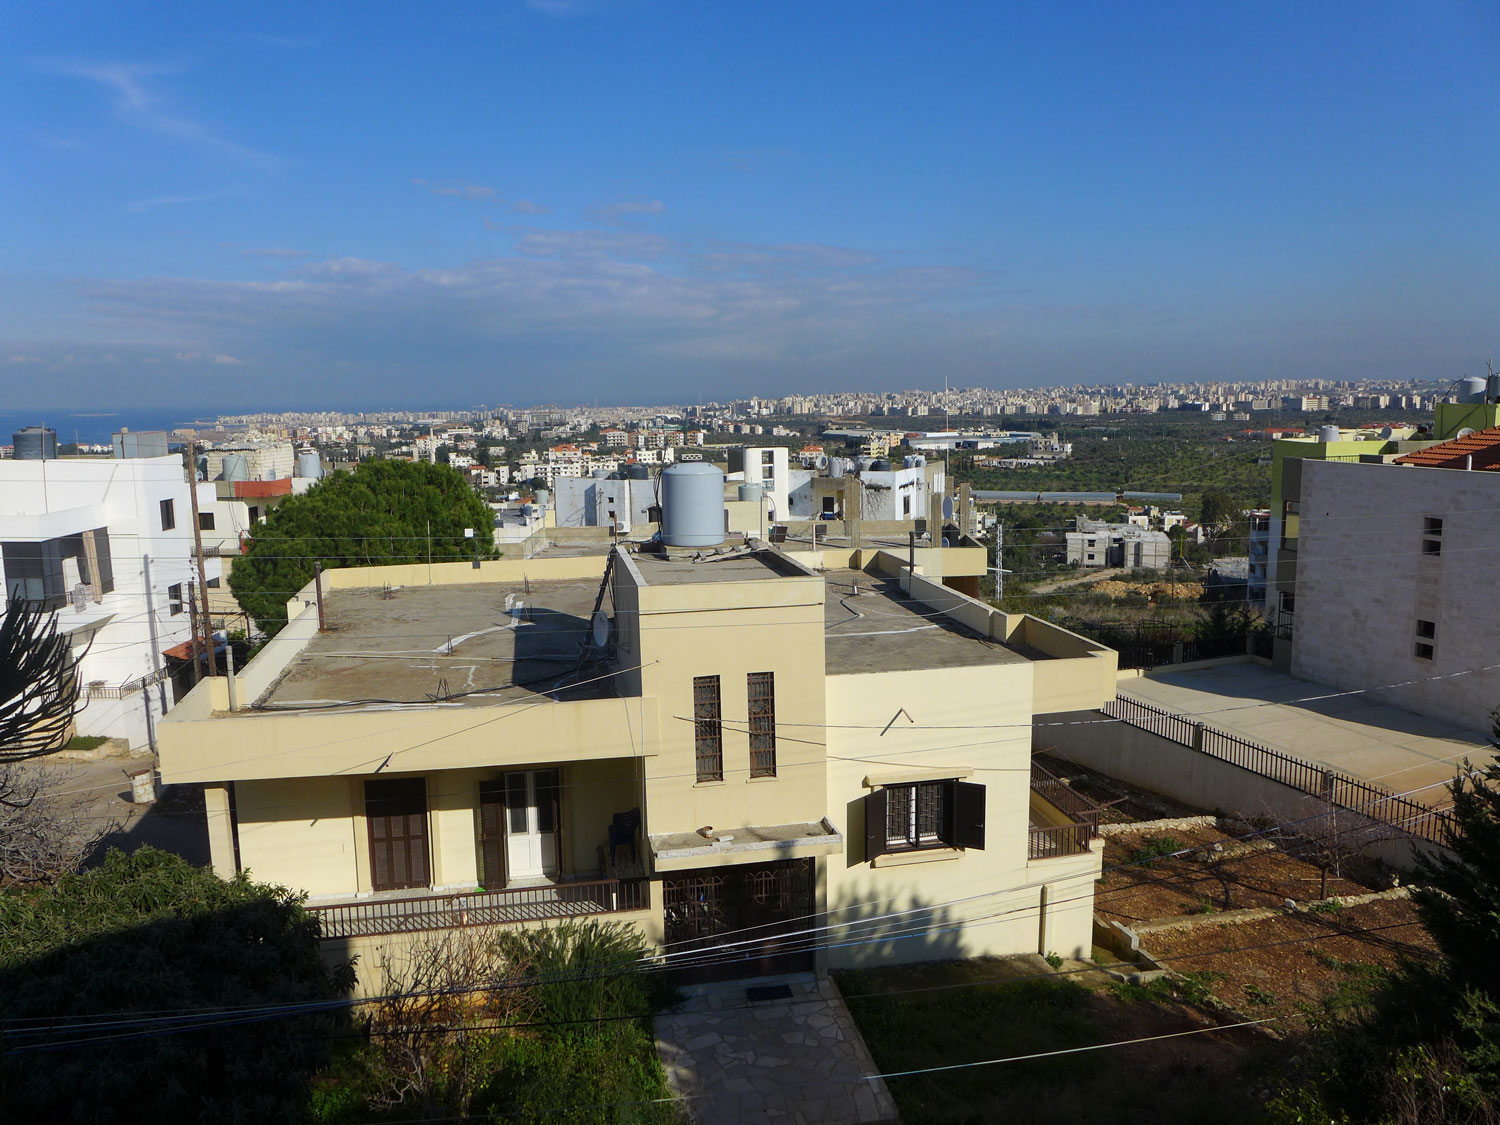 Carole vit à quelques kilomètres de Tripoli. De sa terrasse, on aperçoit la ville. On entend aussi les coups de feu.